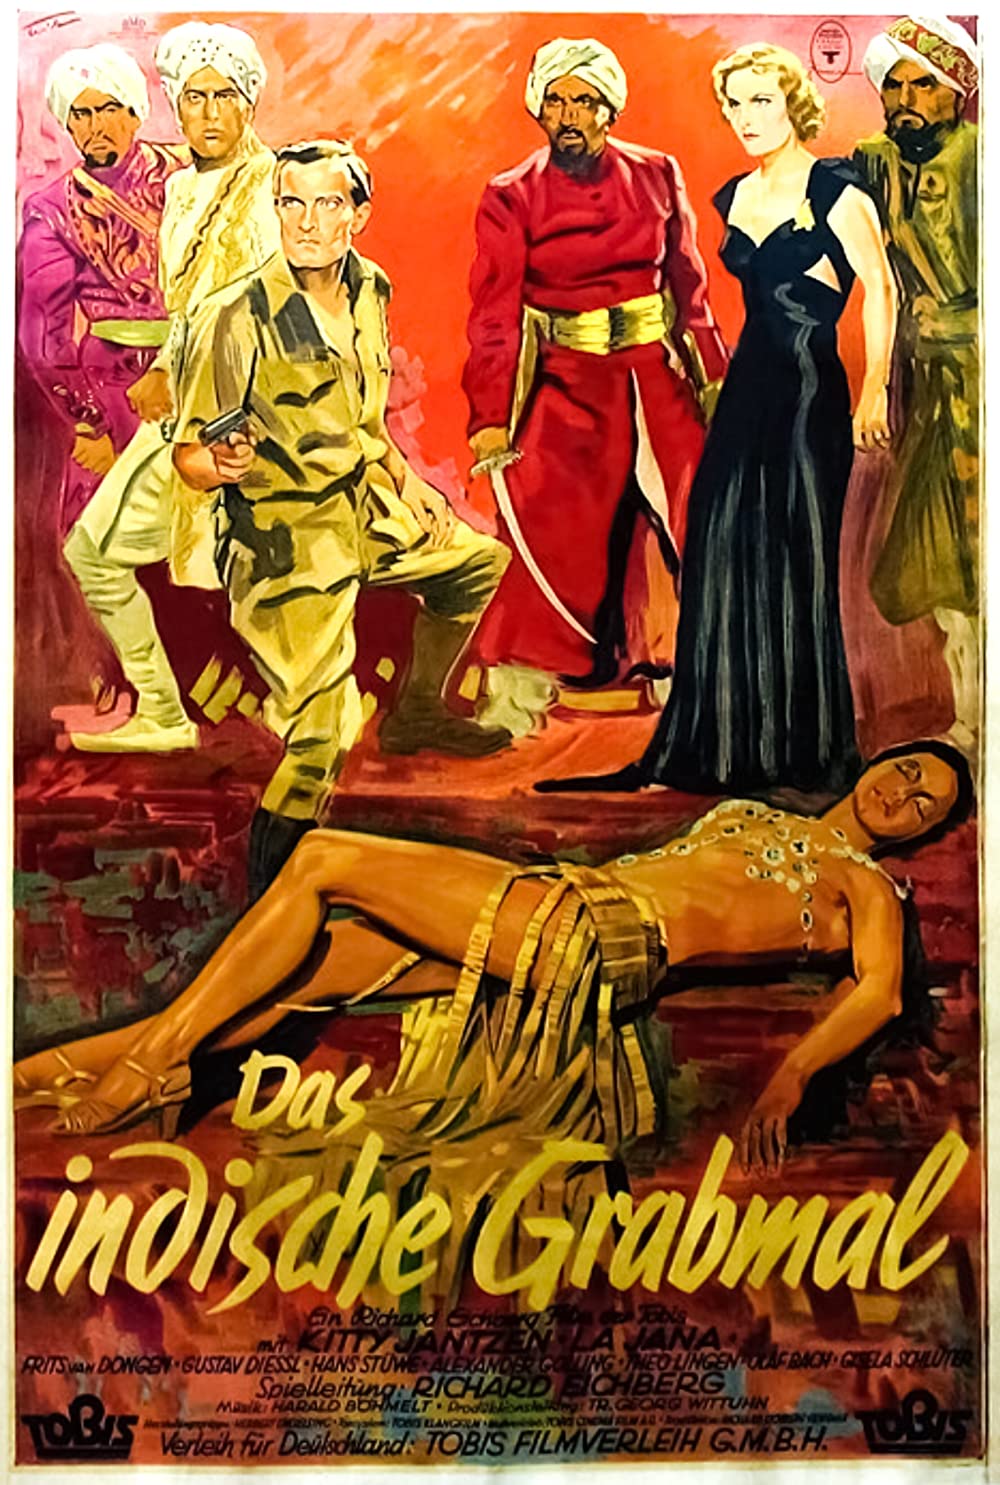 Filmbeschreibung zu Das indische Grabmal (1938)